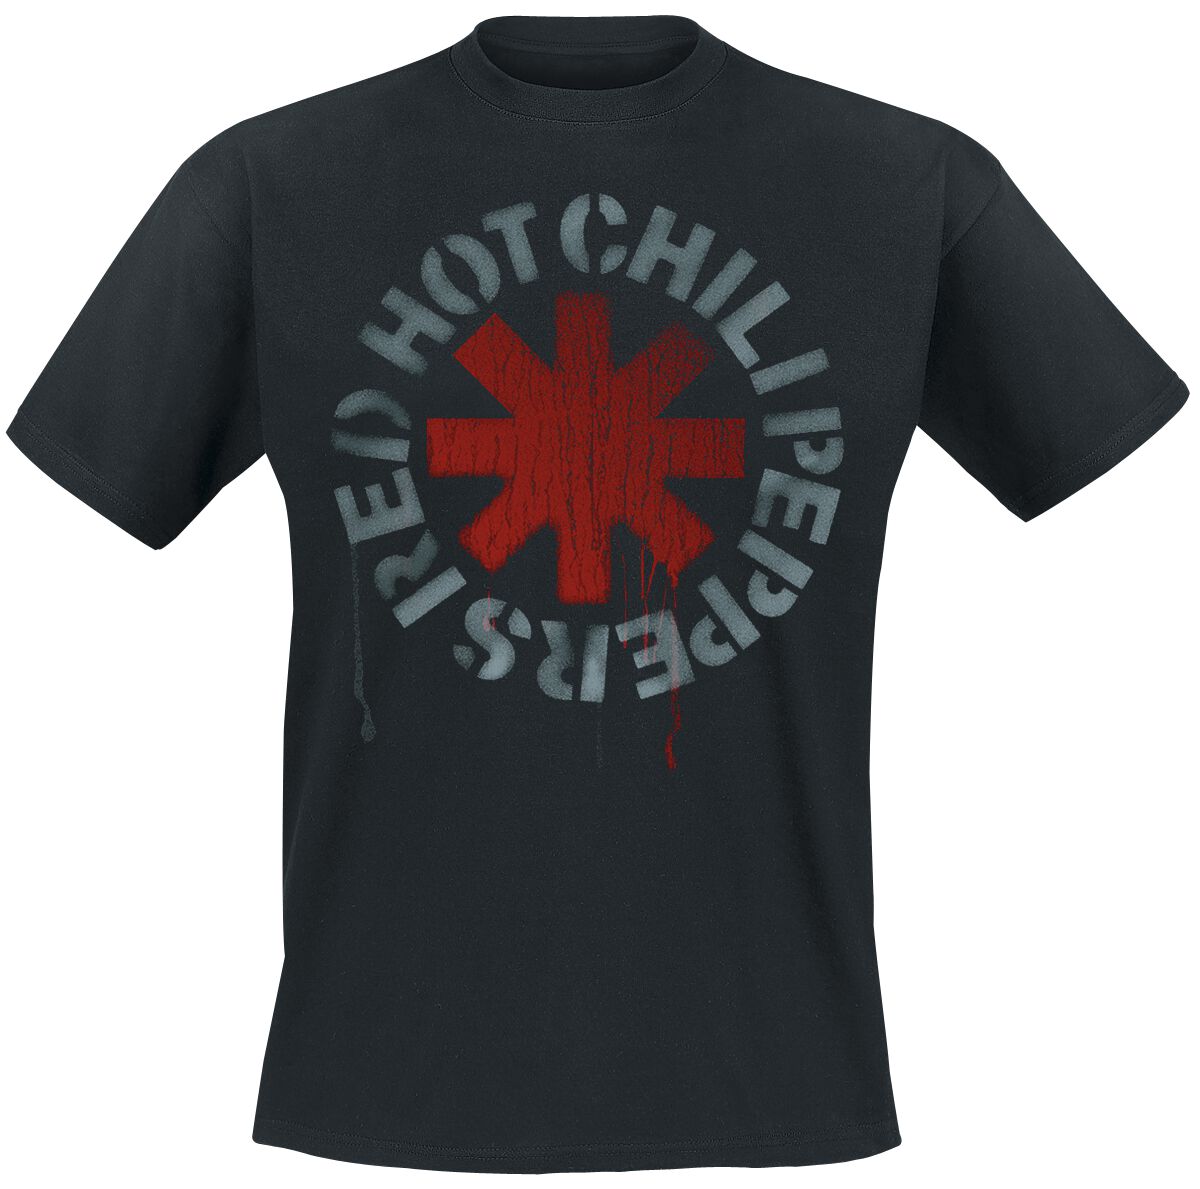 Red Hot Chili Peppers T-Shirt - Stencil Black - S bis 5XL - für Männer - Größe 5XL - schwarz  - Lizenziertes Merchandise!